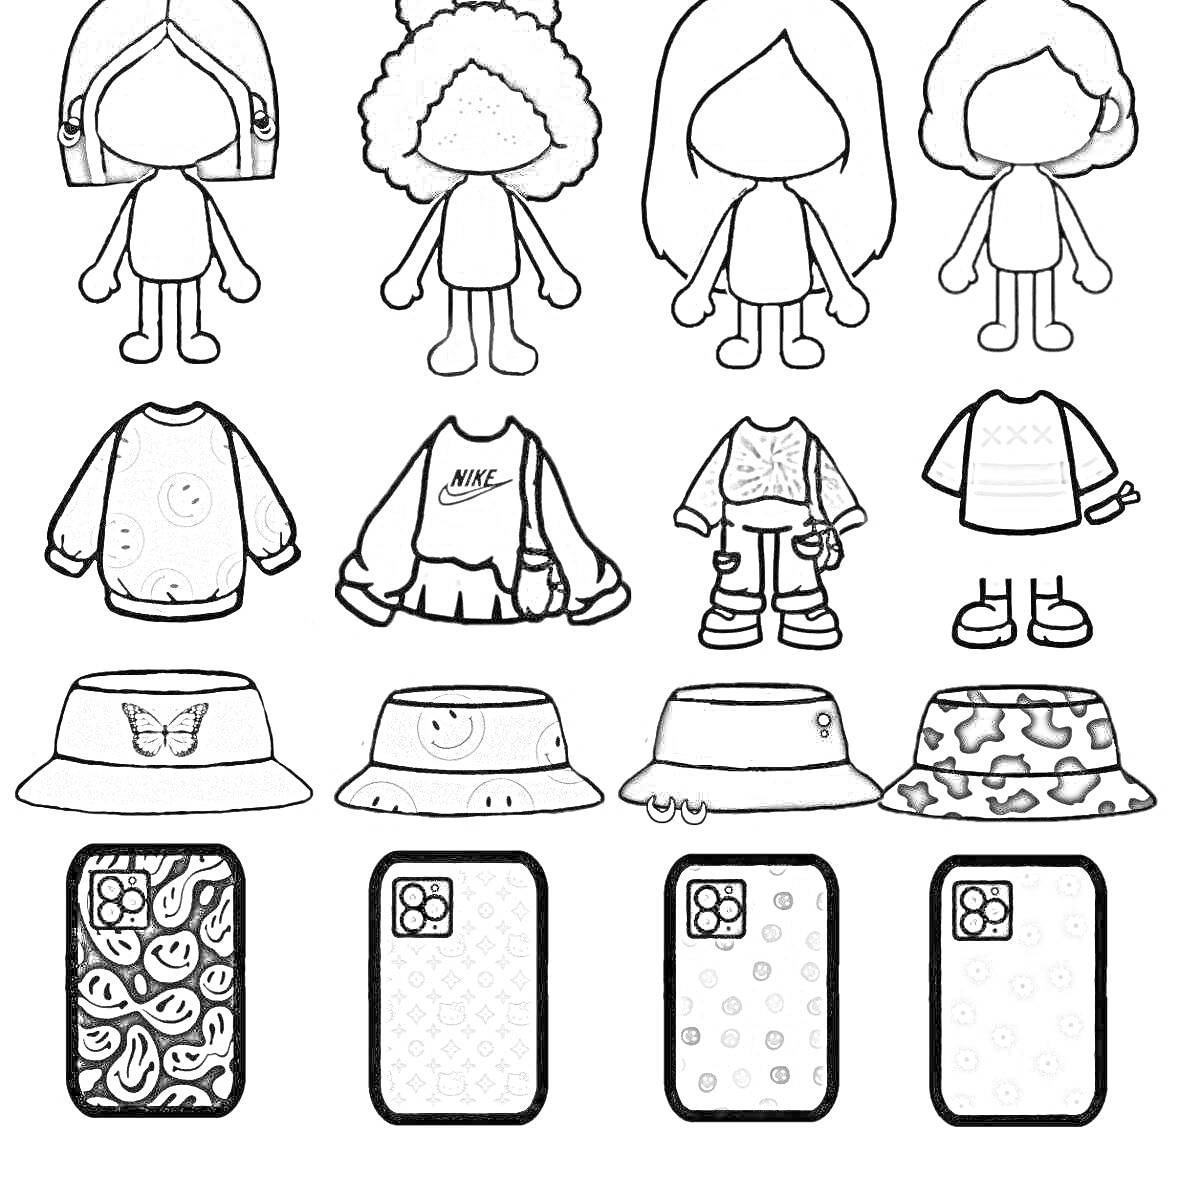 Раскраска Персонажи из Тока Бока без одежды, четыре персонажа с вариантами одежды, головных уборов и аксессуаров